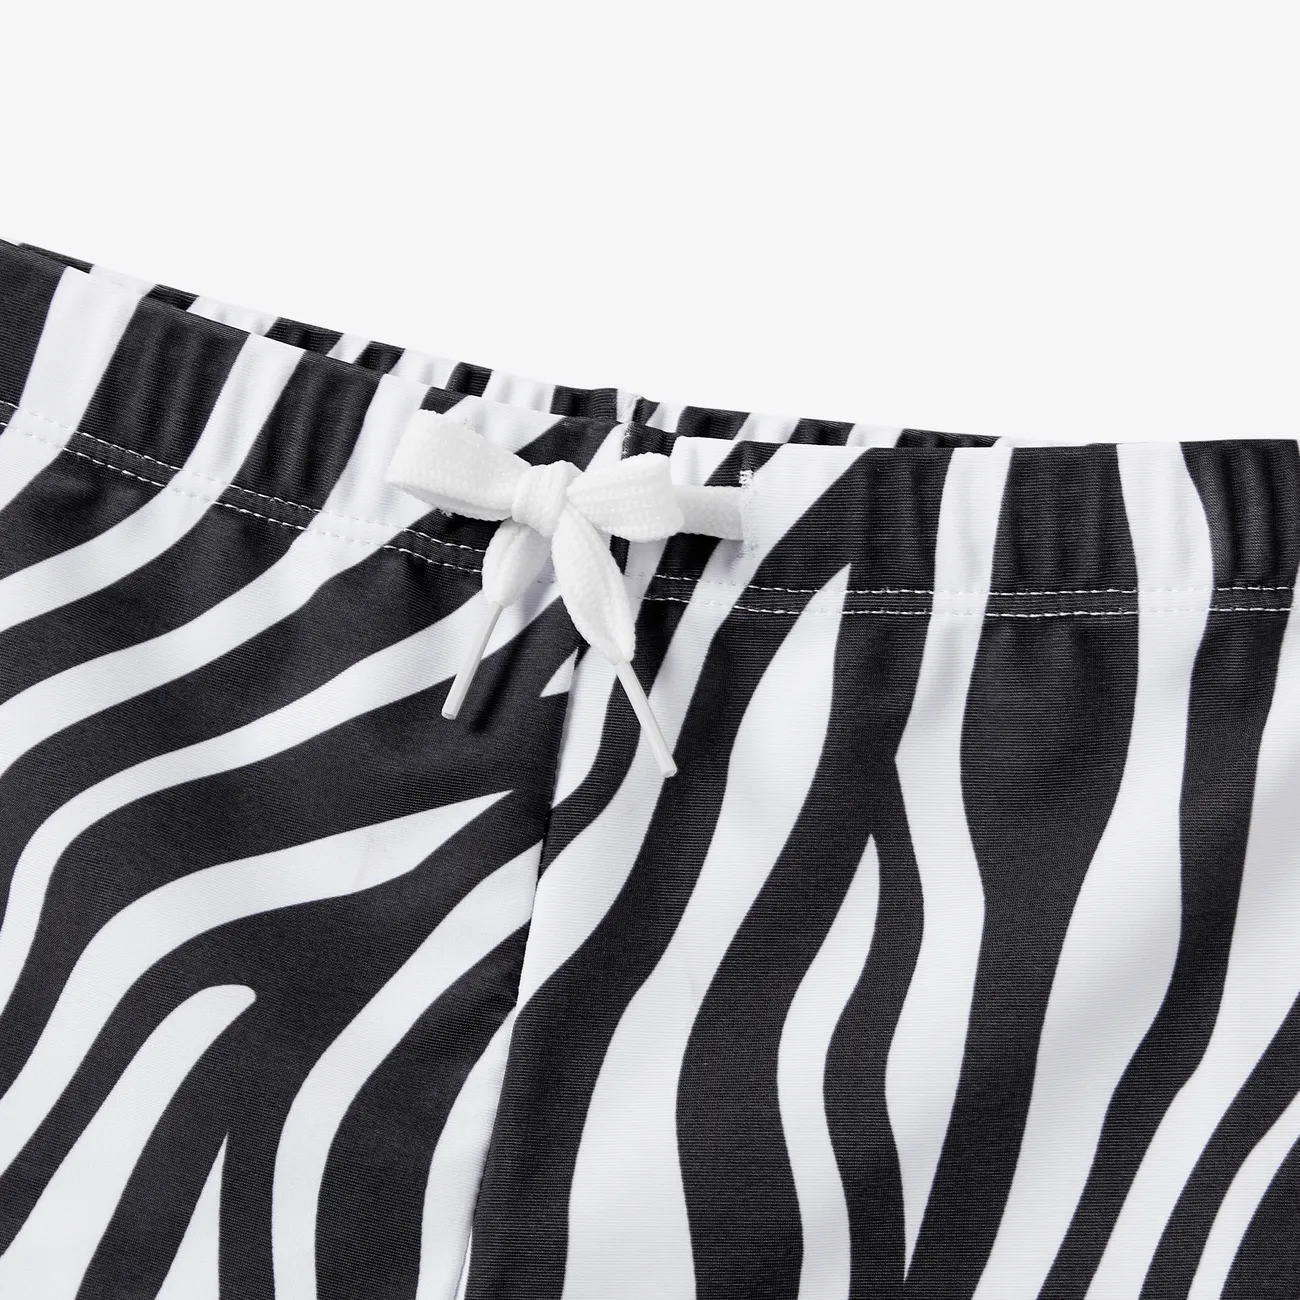 ملابس السباحة إطلالة العائلة للجنسين شريط دانتيل نقش حيوانات أسود / أبيض big image 1